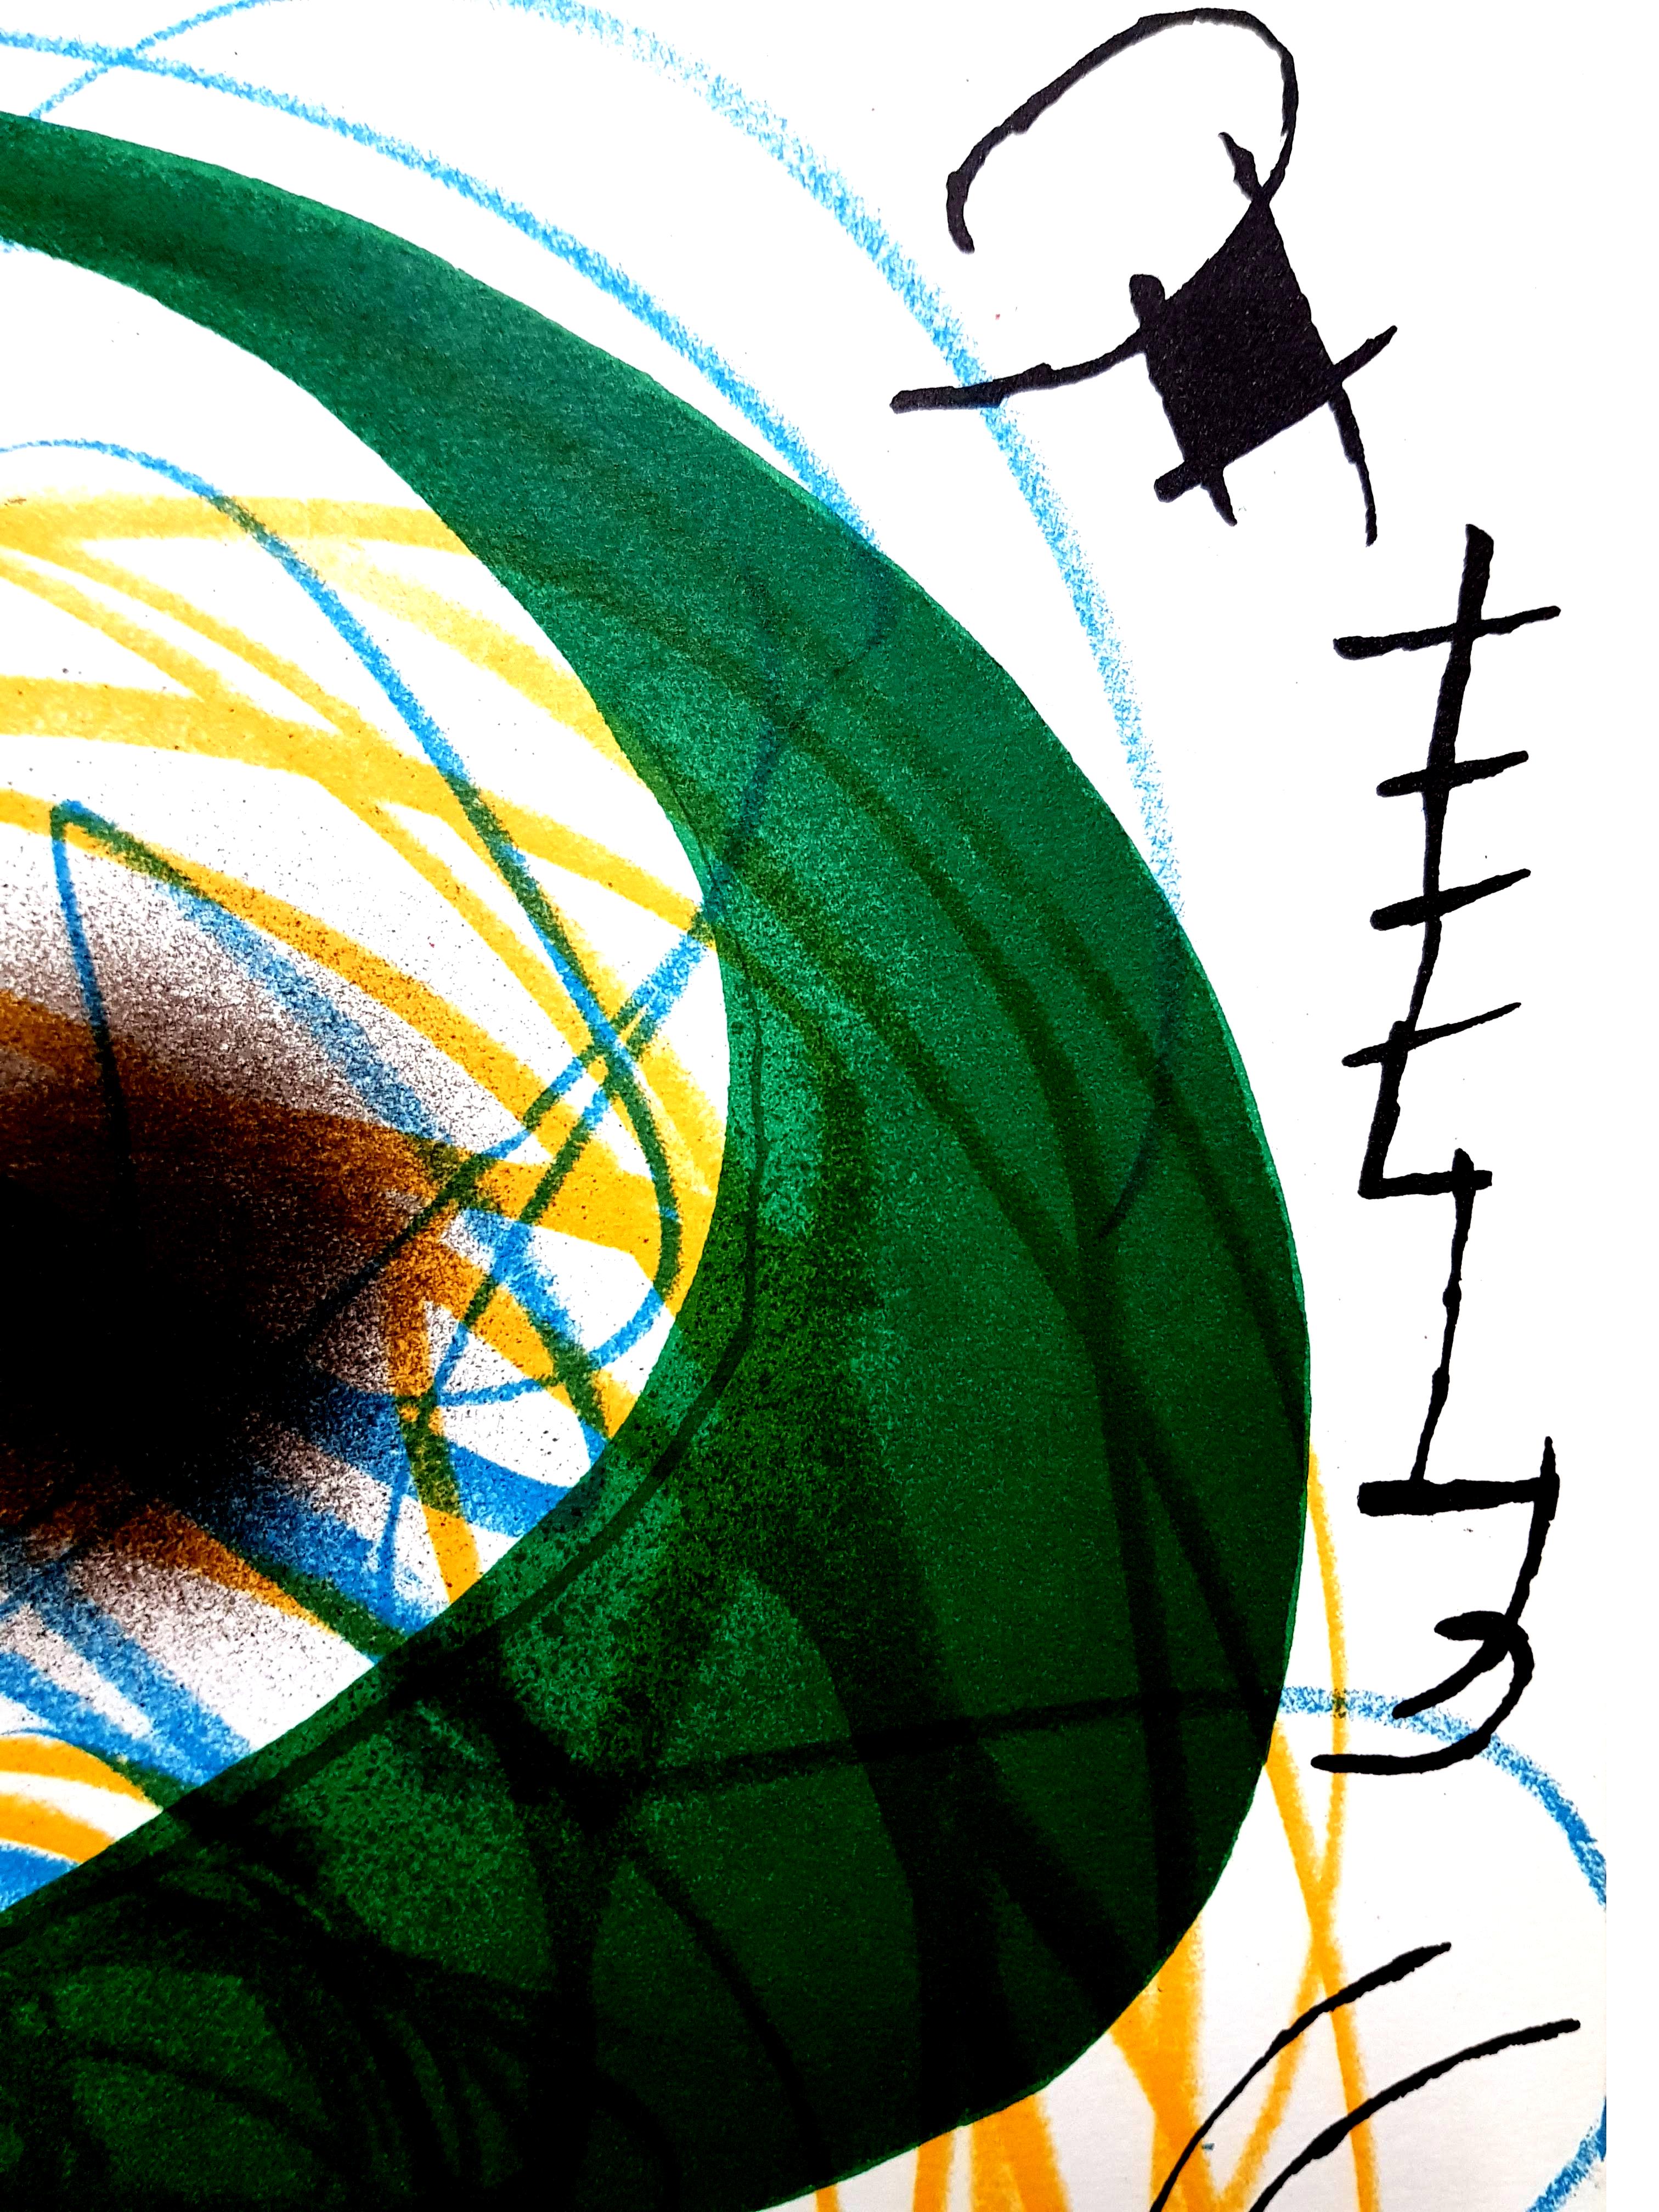 Joan Miro Lithographie abstraite originale de Miro
Artiste : Joan Miro
Support : Lithographie originale sur Vellum de Rives
Portefeuille : Miro Lithographe V.
Année : 1972
Edition : 5000
Taille de l'image : 10